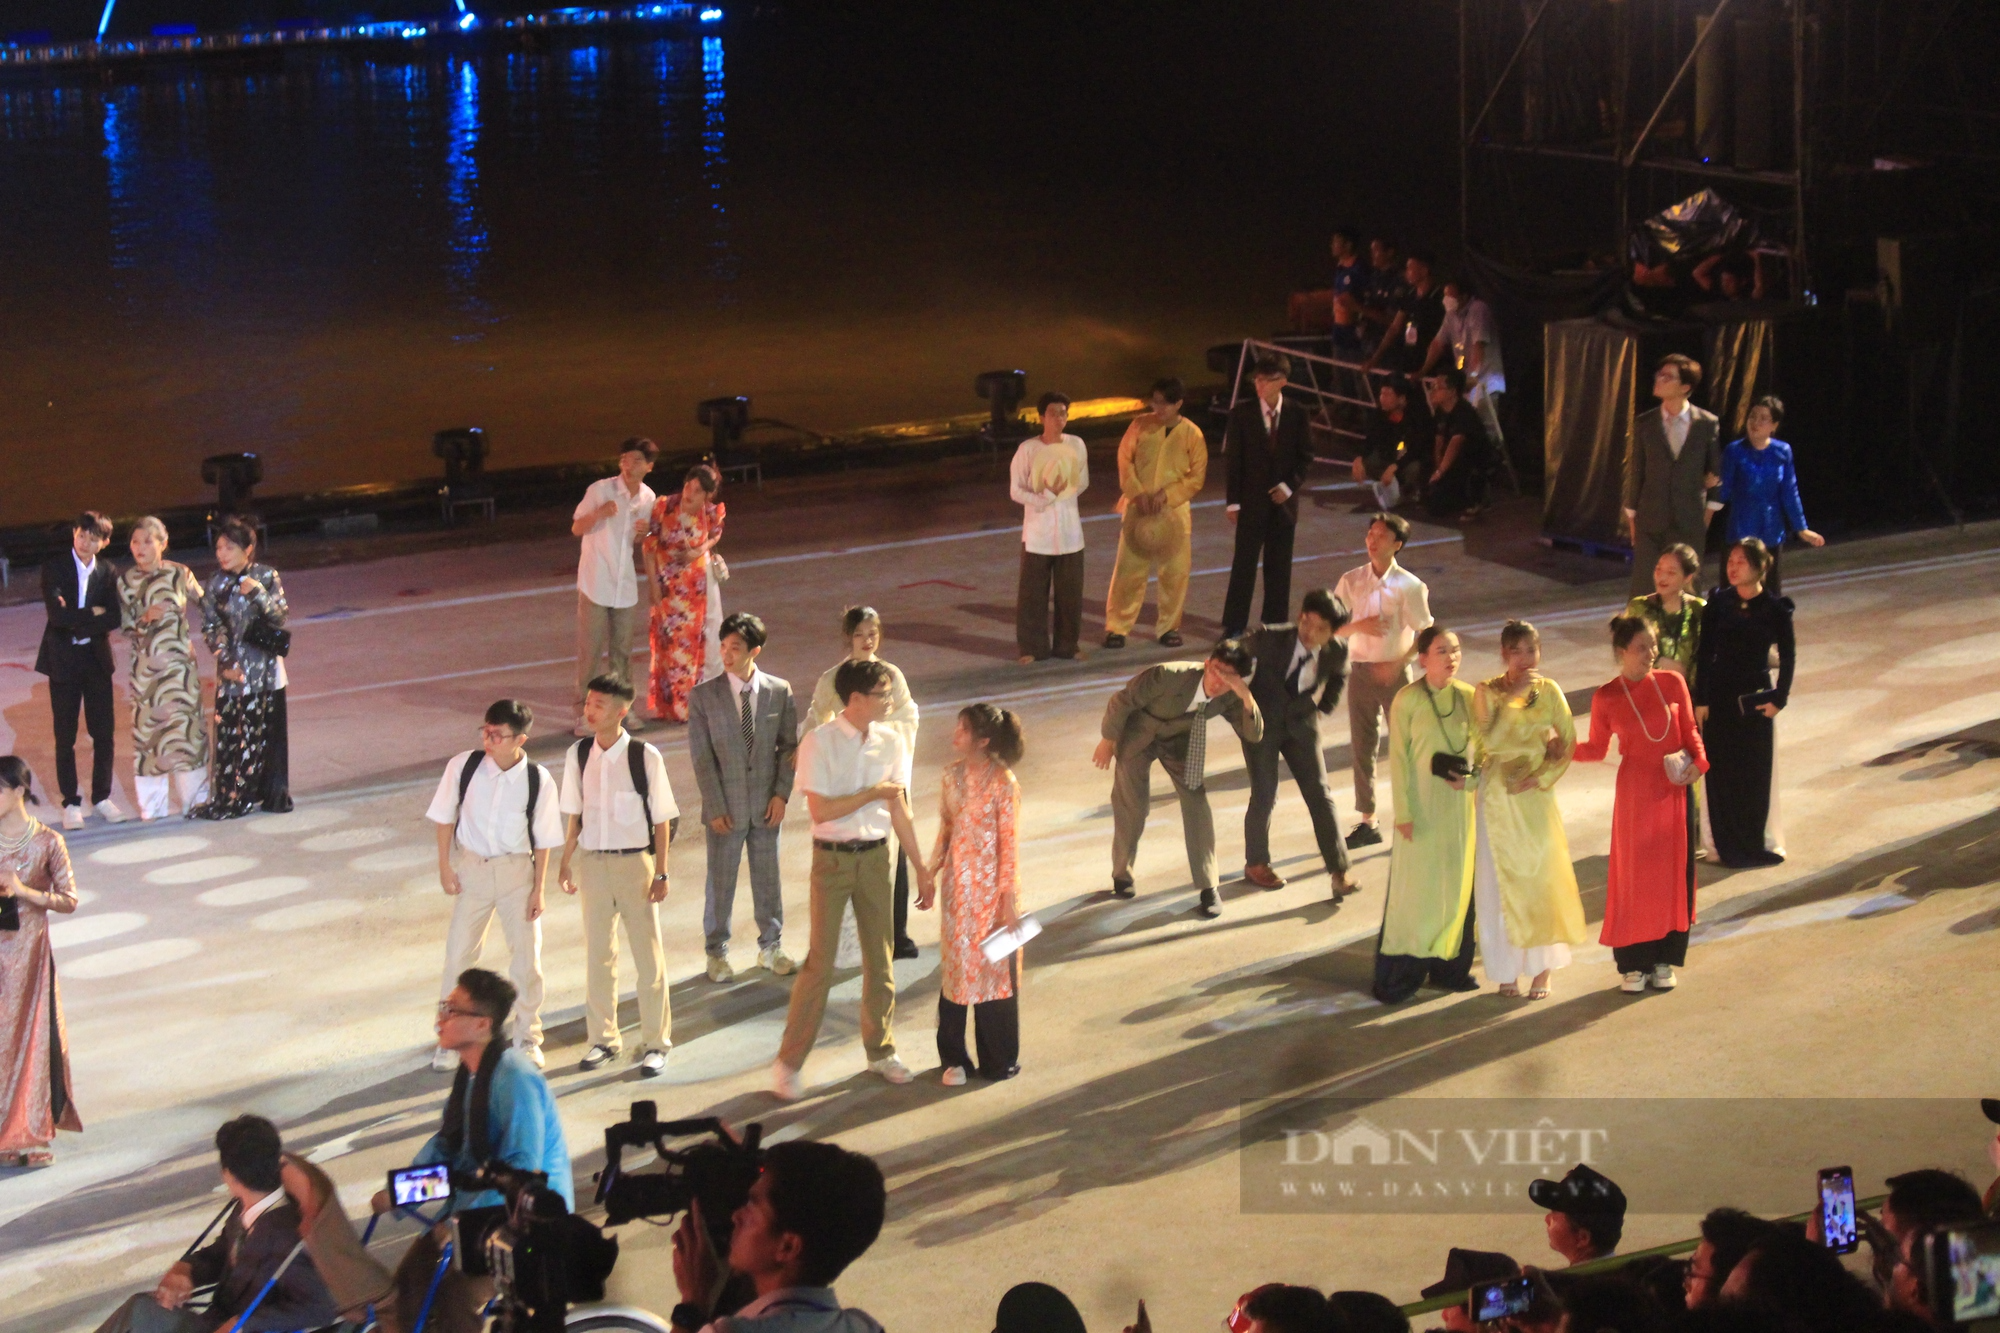 Mãn nhãn đêm nghệ thuật Dòng sông kể chuyện, 700 diễn viên biểu diễn trên sông Sài Gòn - Ảnh 9.